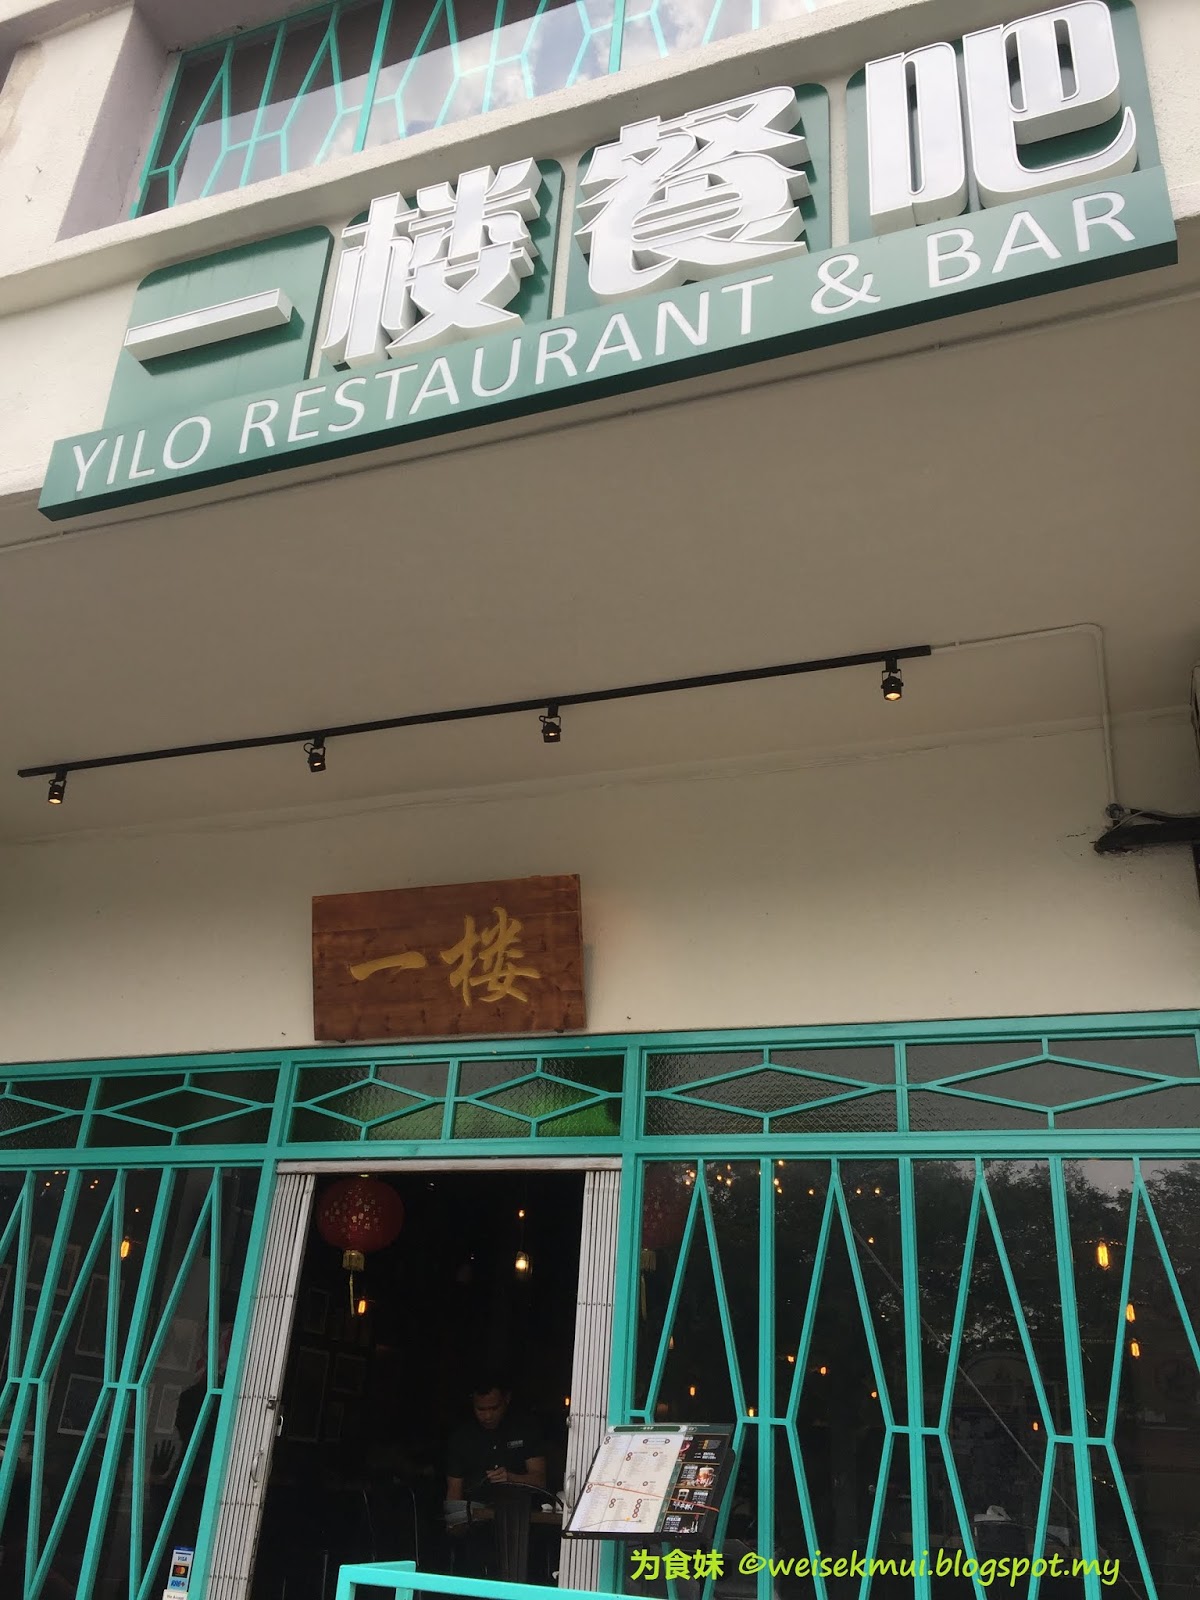 Yilo restaurant & bar rimbayu